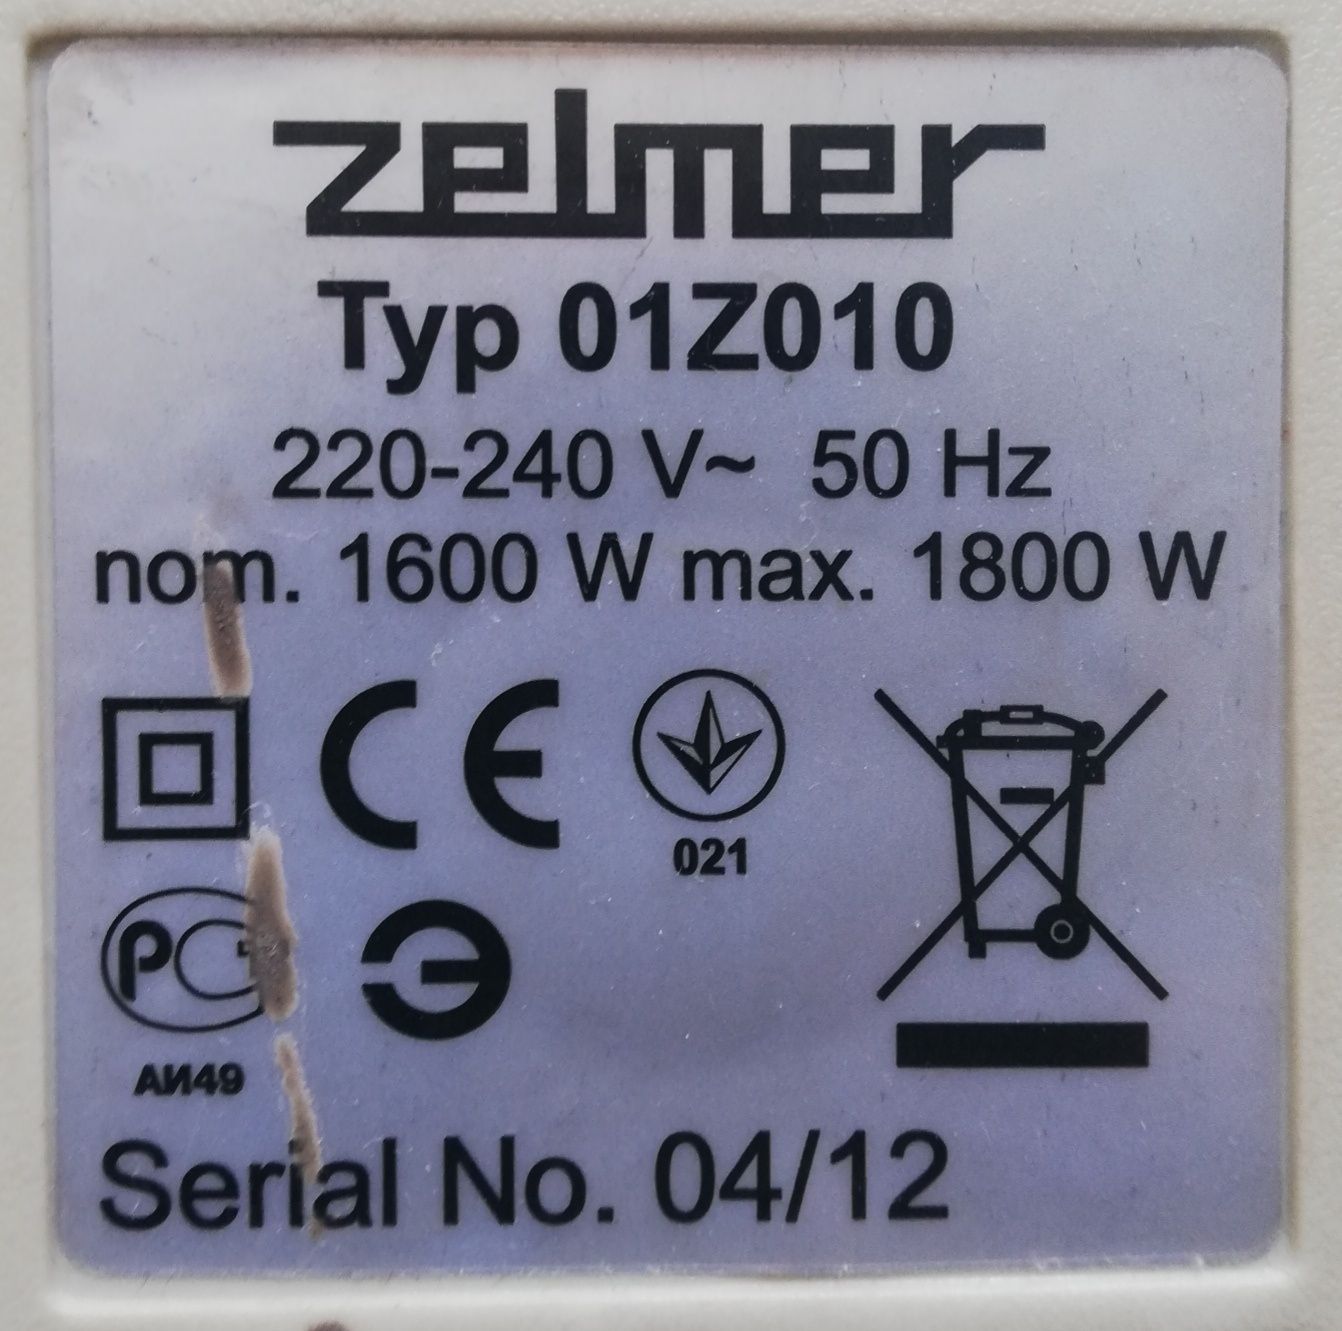 Silnik do odkurzacza Zelmer typ 01Z010  (1600W) 

Typ 01Z010

220-240